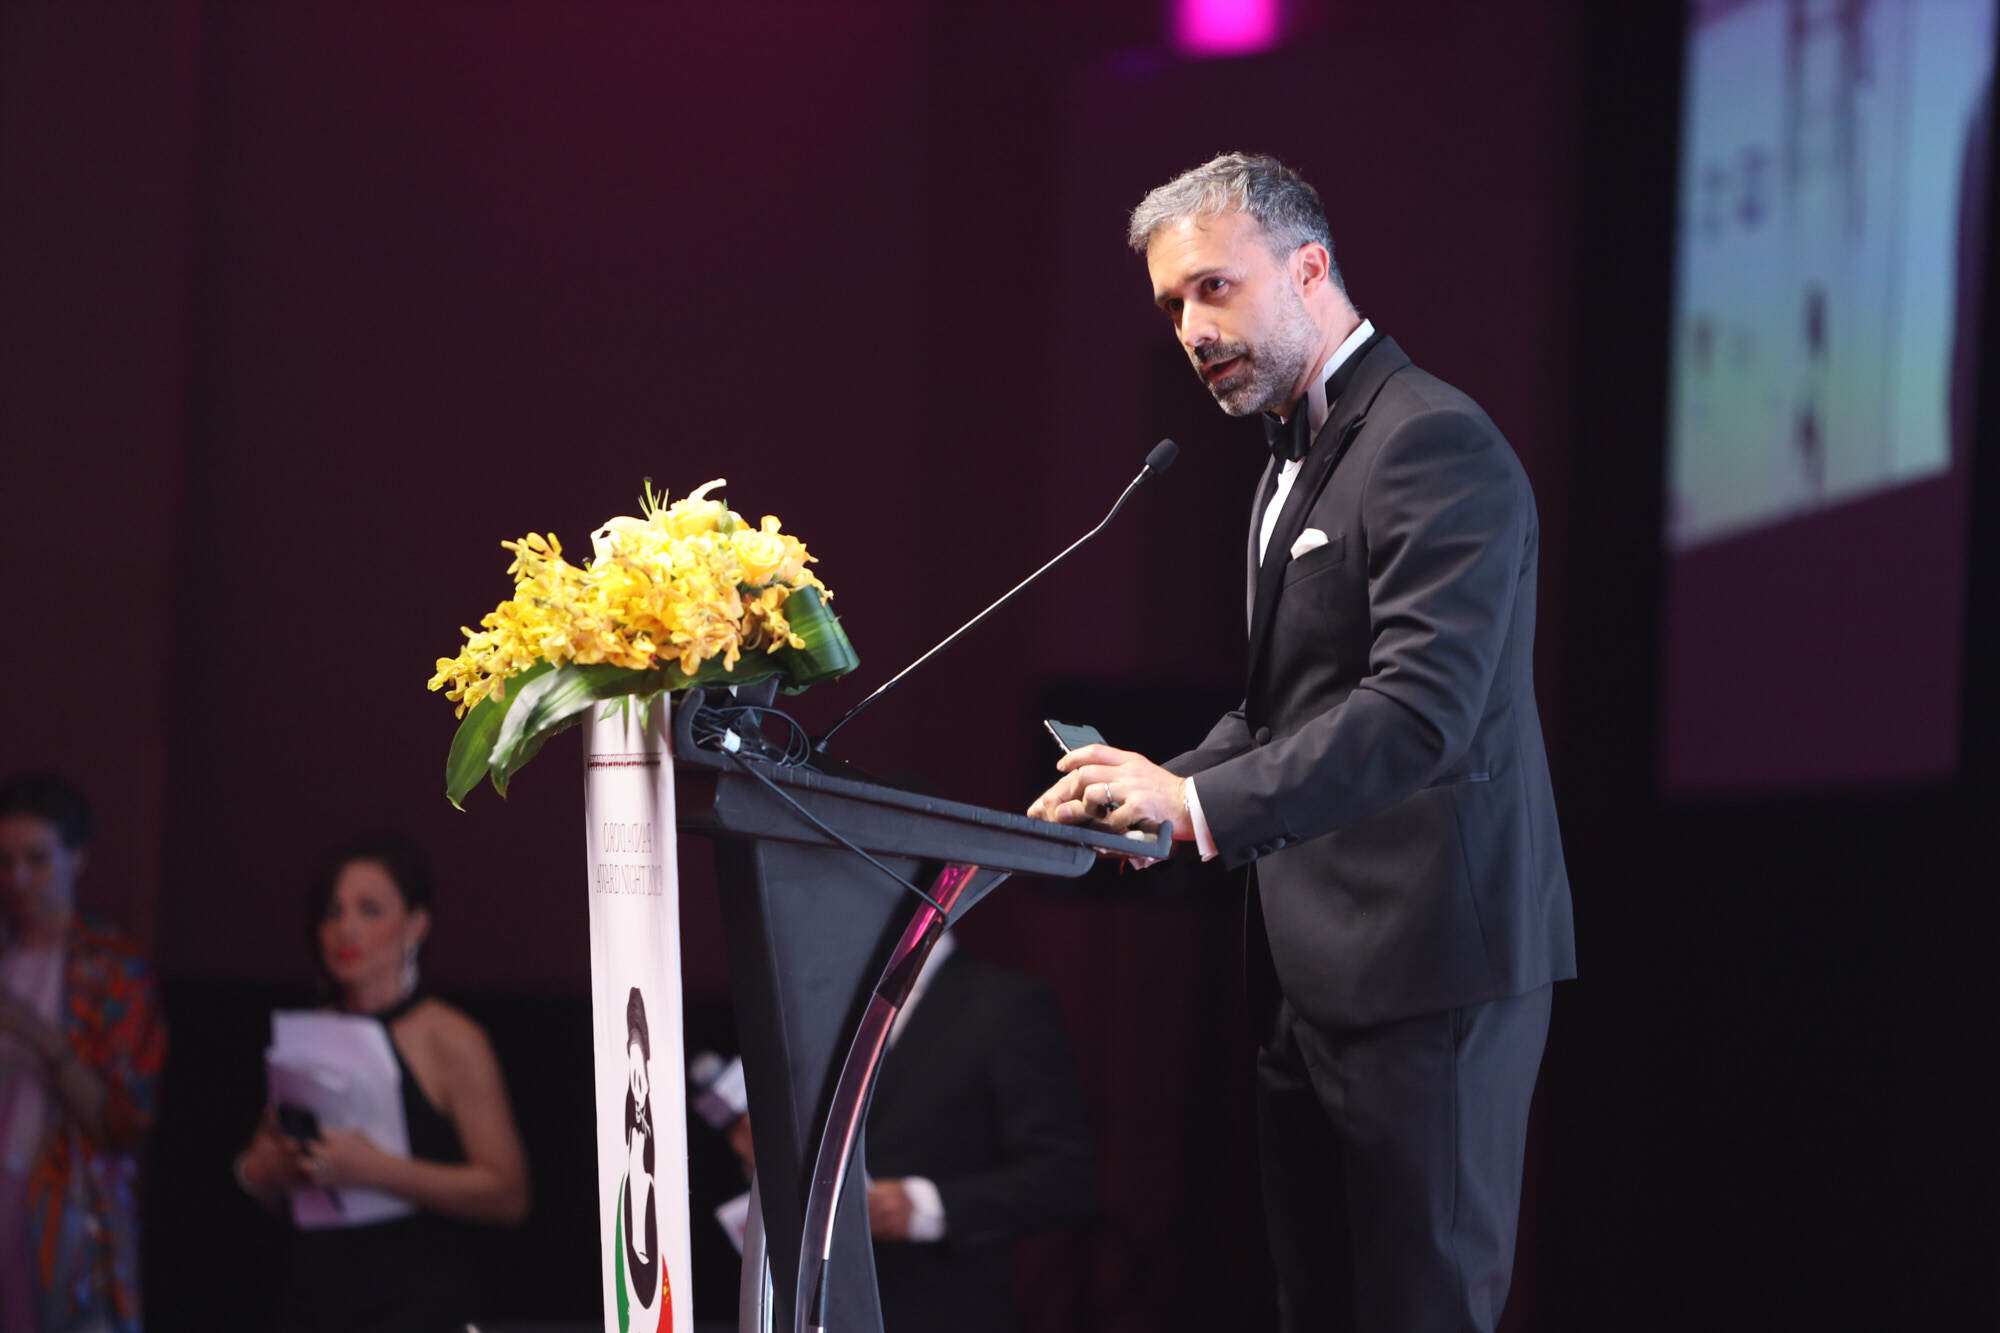 歌诗达邮轮集团亚洲总裁马睿哲(Mario Zanetti)在金熊猫奖(Panda d’Oro Award)颁奖典礼现场发表演讲